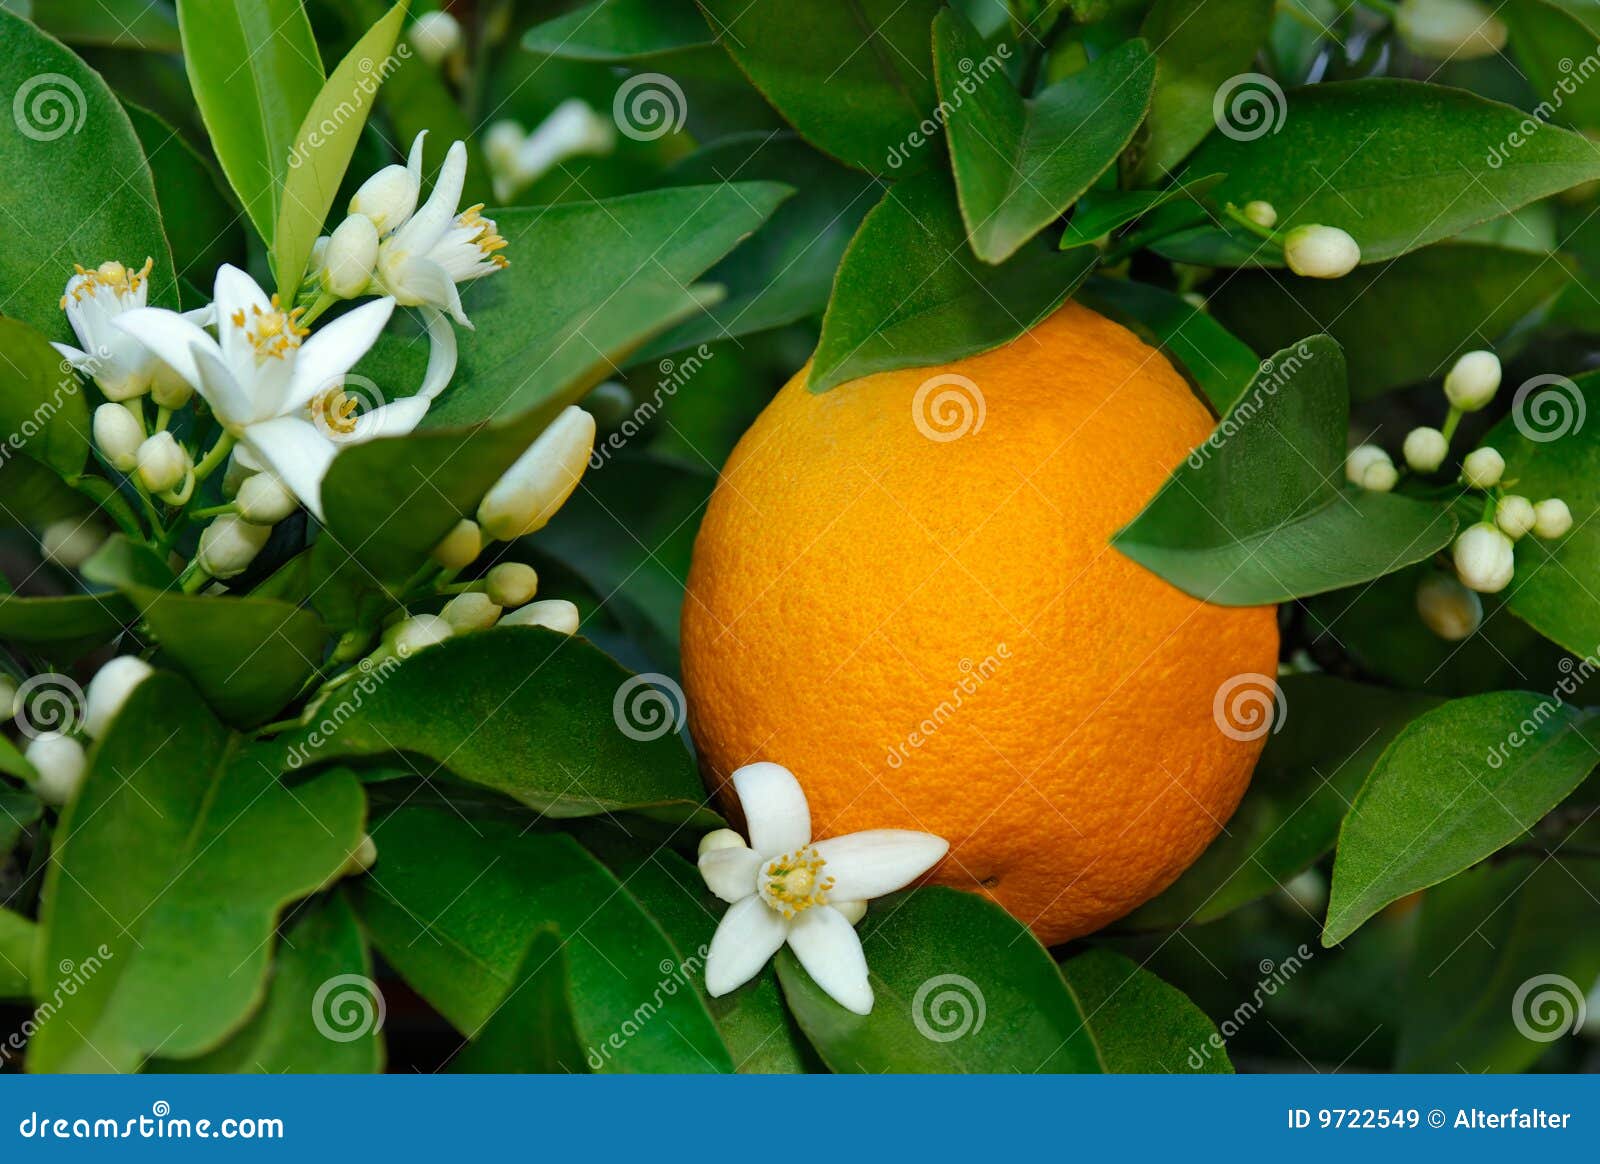 orange and orange blossom